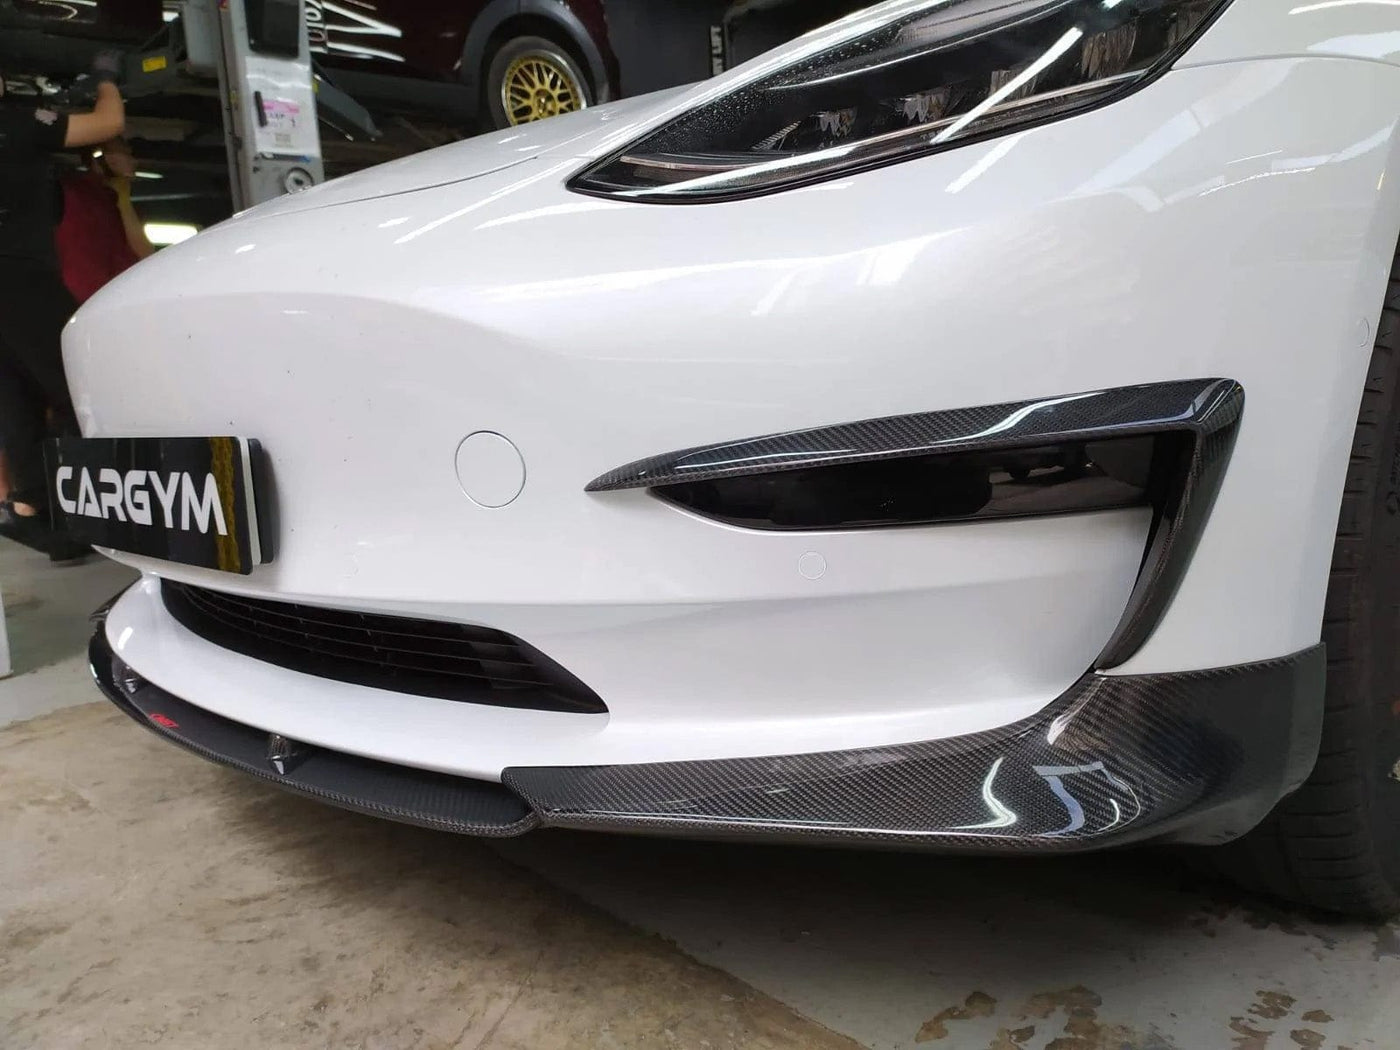 CMST Genuine Carbon Fiber Front Lip V2 For Tesla Model 3 2017-2023 - PimpMyEV